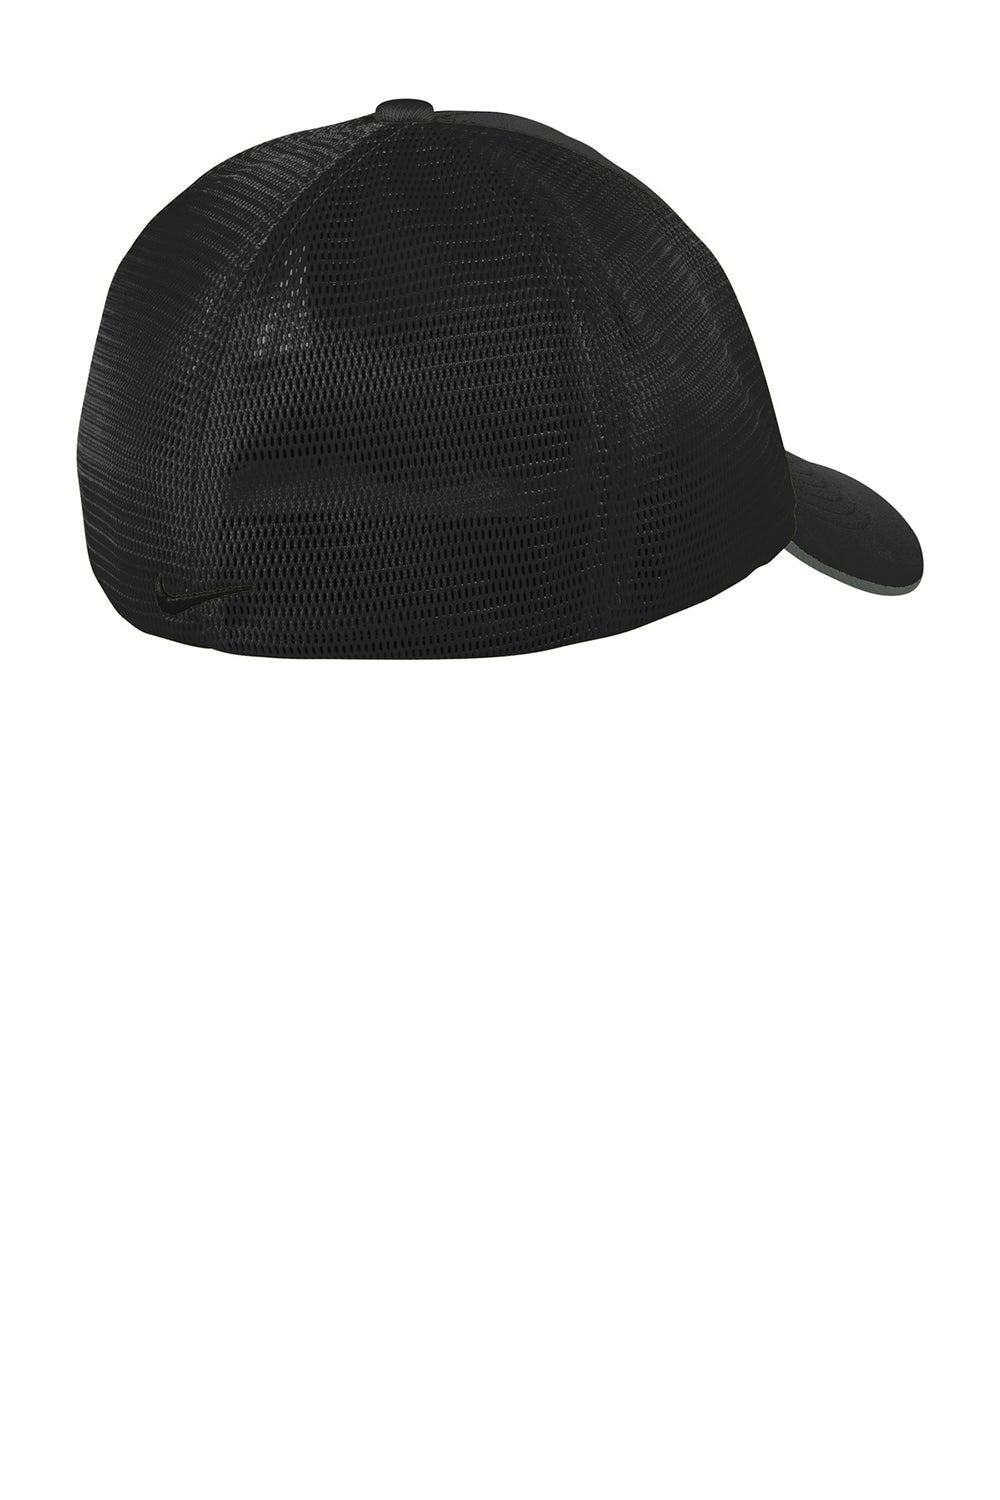 Nike NKAO9293/NKFB6448 Mens Dri-Fit Moisture Wicking Stretch Fit Hat Black Flat Back